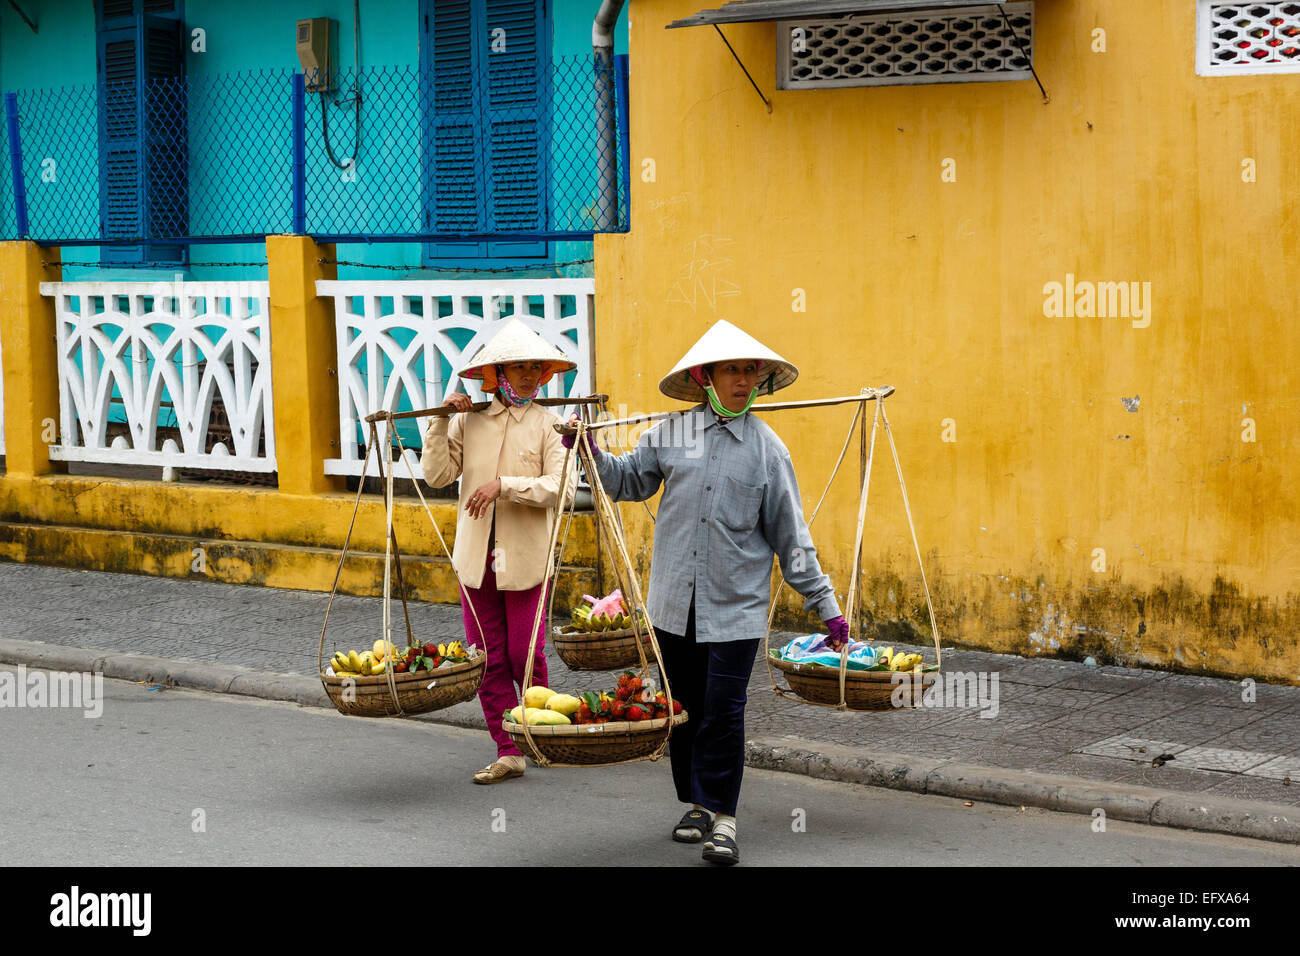 Las mujeres que llevan cestas, Hoi An, Vietnam. Foto de stock